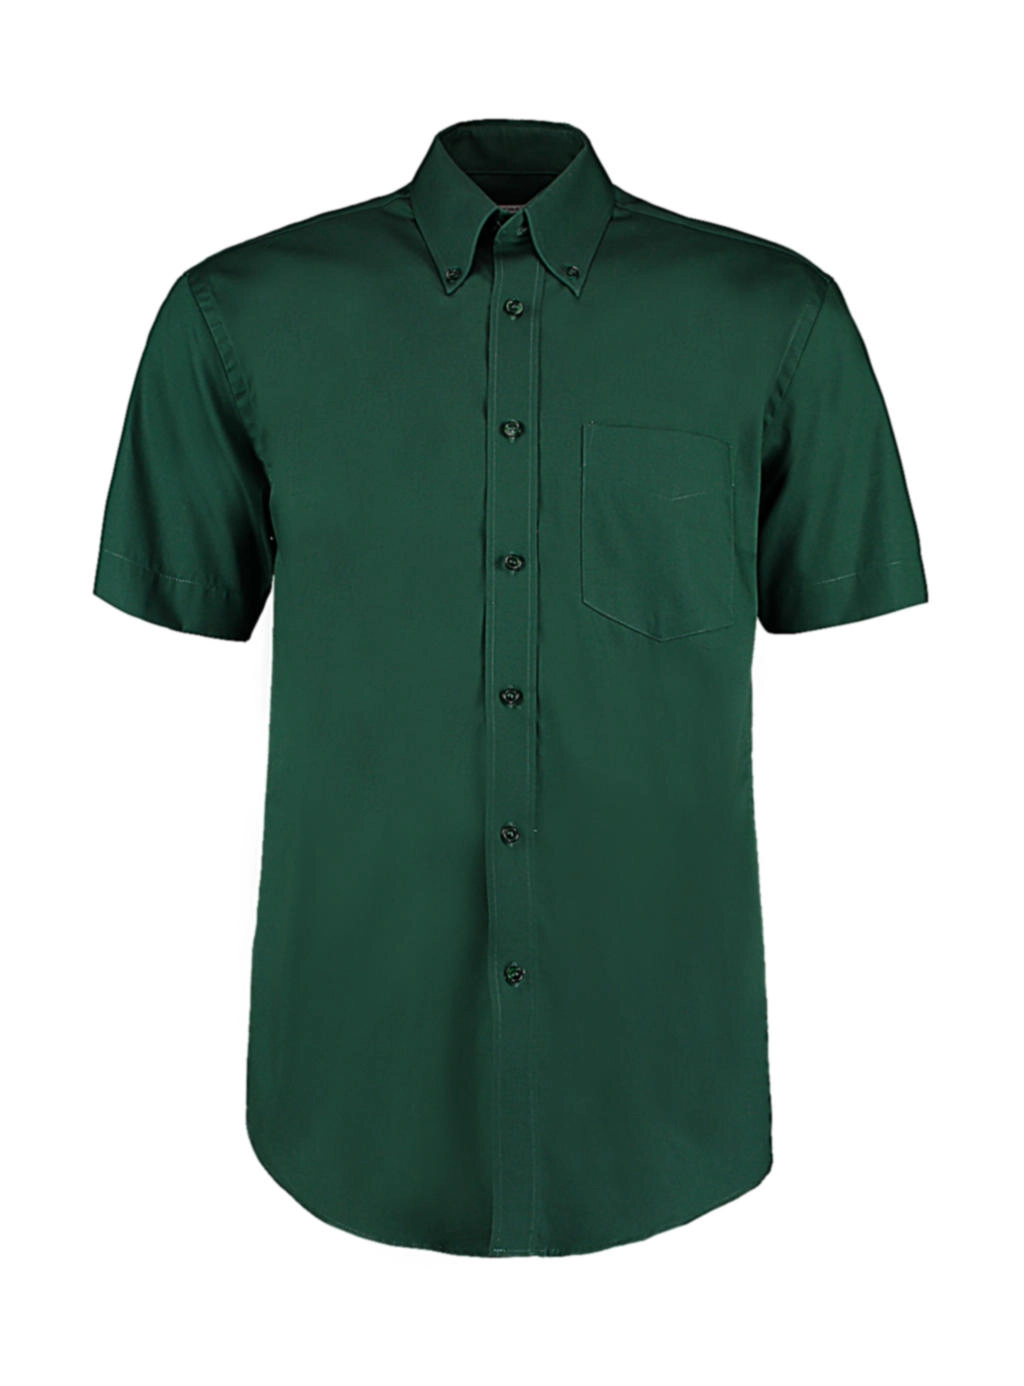 Classic Fit Premium Oxford Shirt SSL zum Besticken und Bedrucken in der Farbe Bottle Green mit Ihren Logo, Schriftzug oder Motiv.